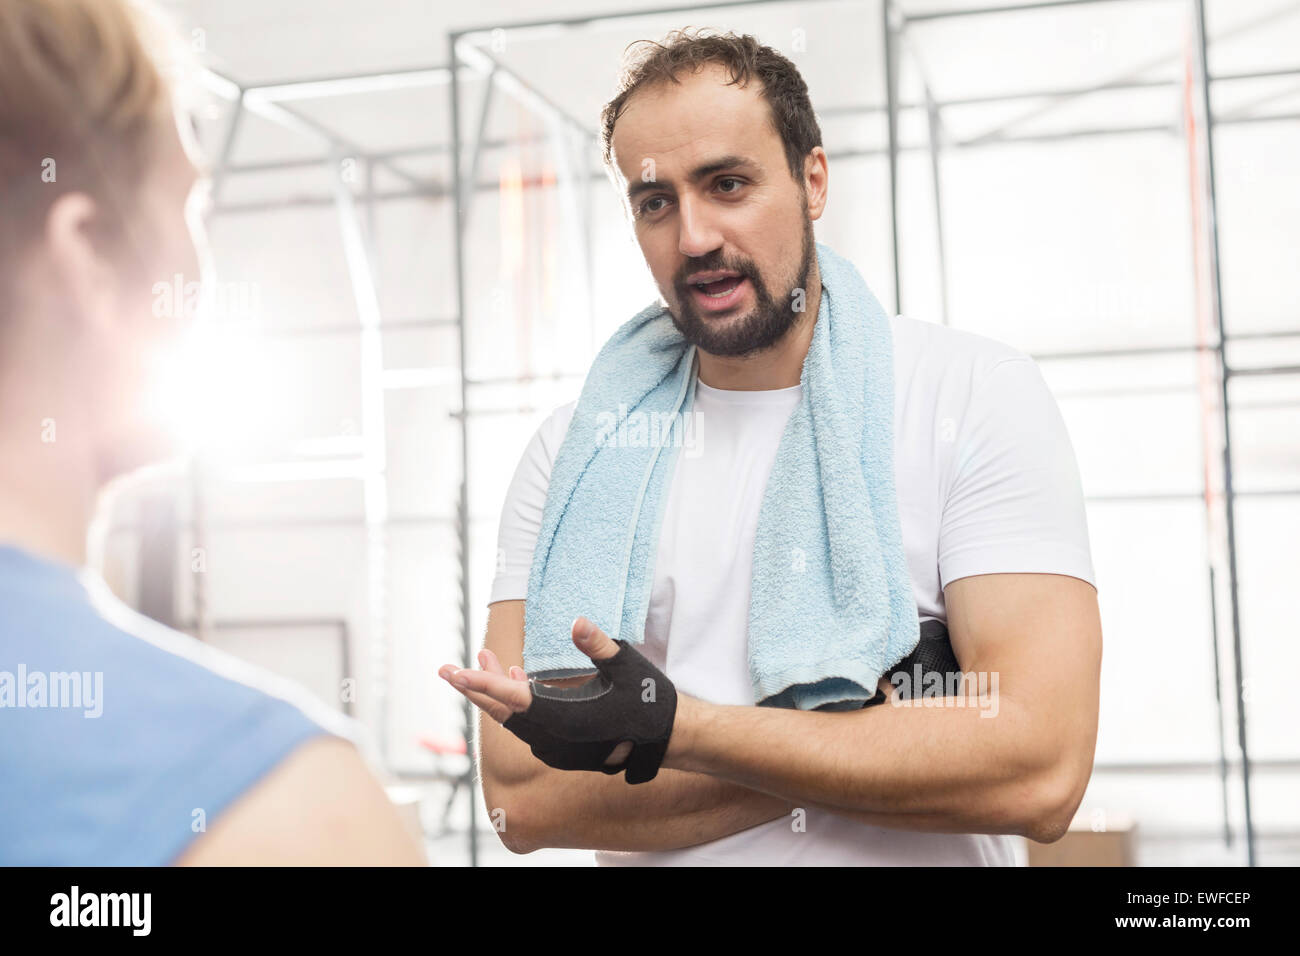 Mann im Gespräch mit männlichen Freund in Crossfit gym Stockfoto